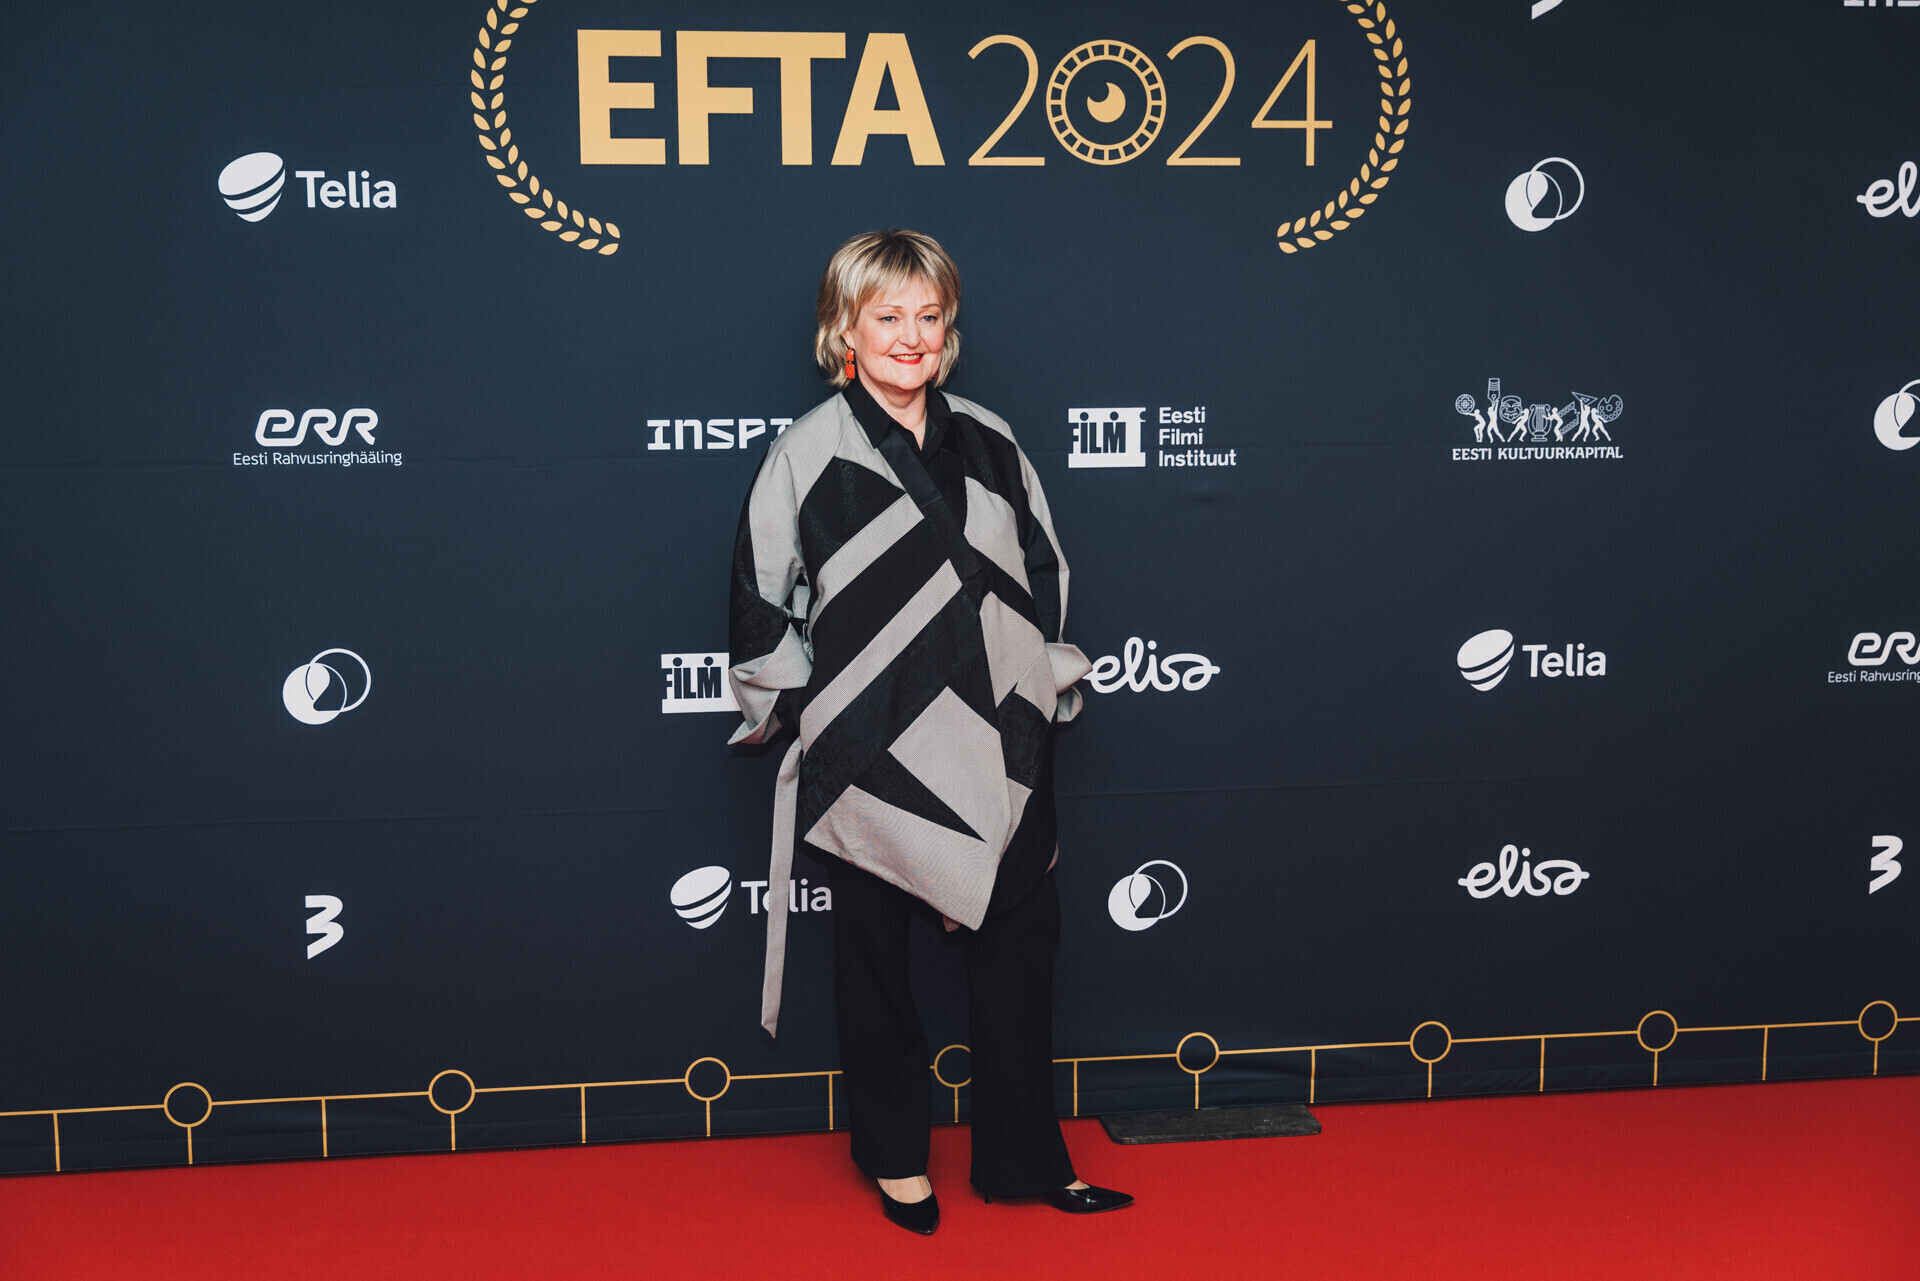 Edith Sepp EFTA 2024 galal